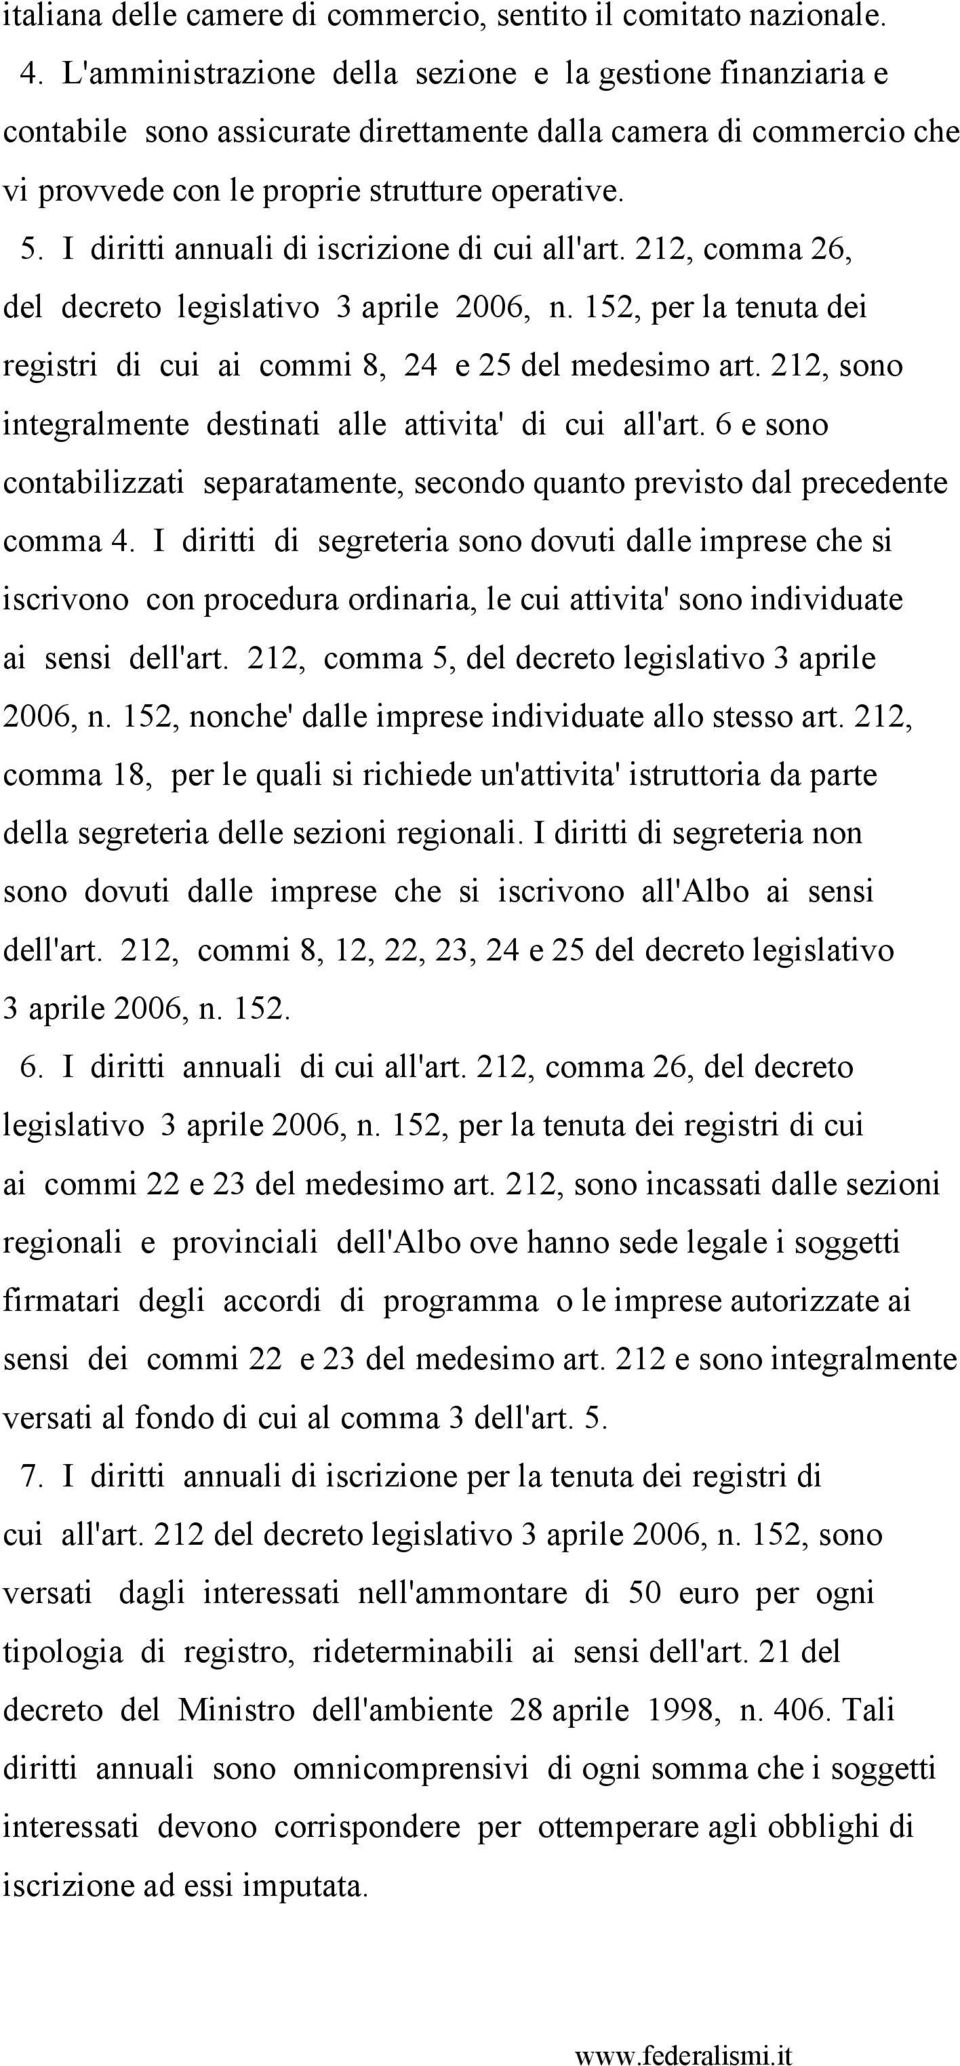 I diritti annuali di iscrizione di cui all'art. 212, comma 26, del decreto legislativo 3 aprile 2006, n. 152, per la tenuta dei registri di cui ai commi 8, 24 e 25 del medesimo art.